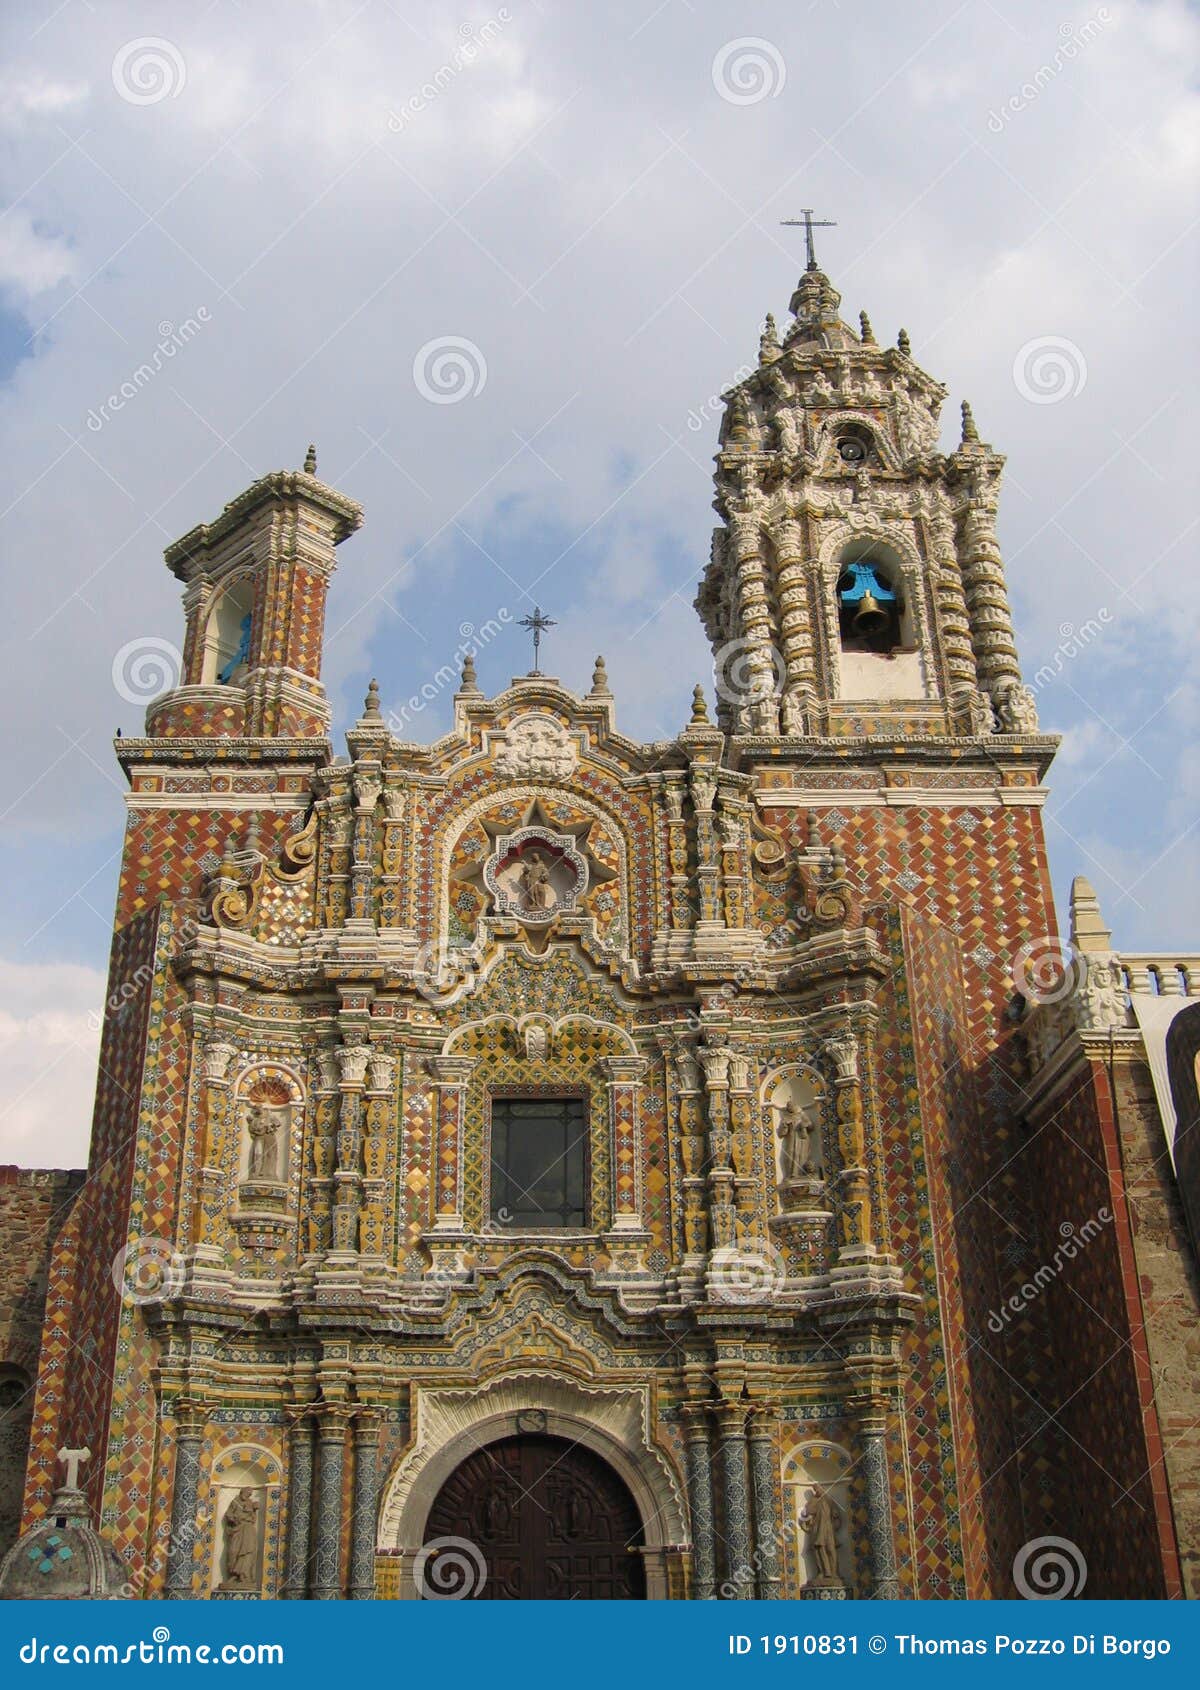 convento huejotzingo - acatepec - mexico